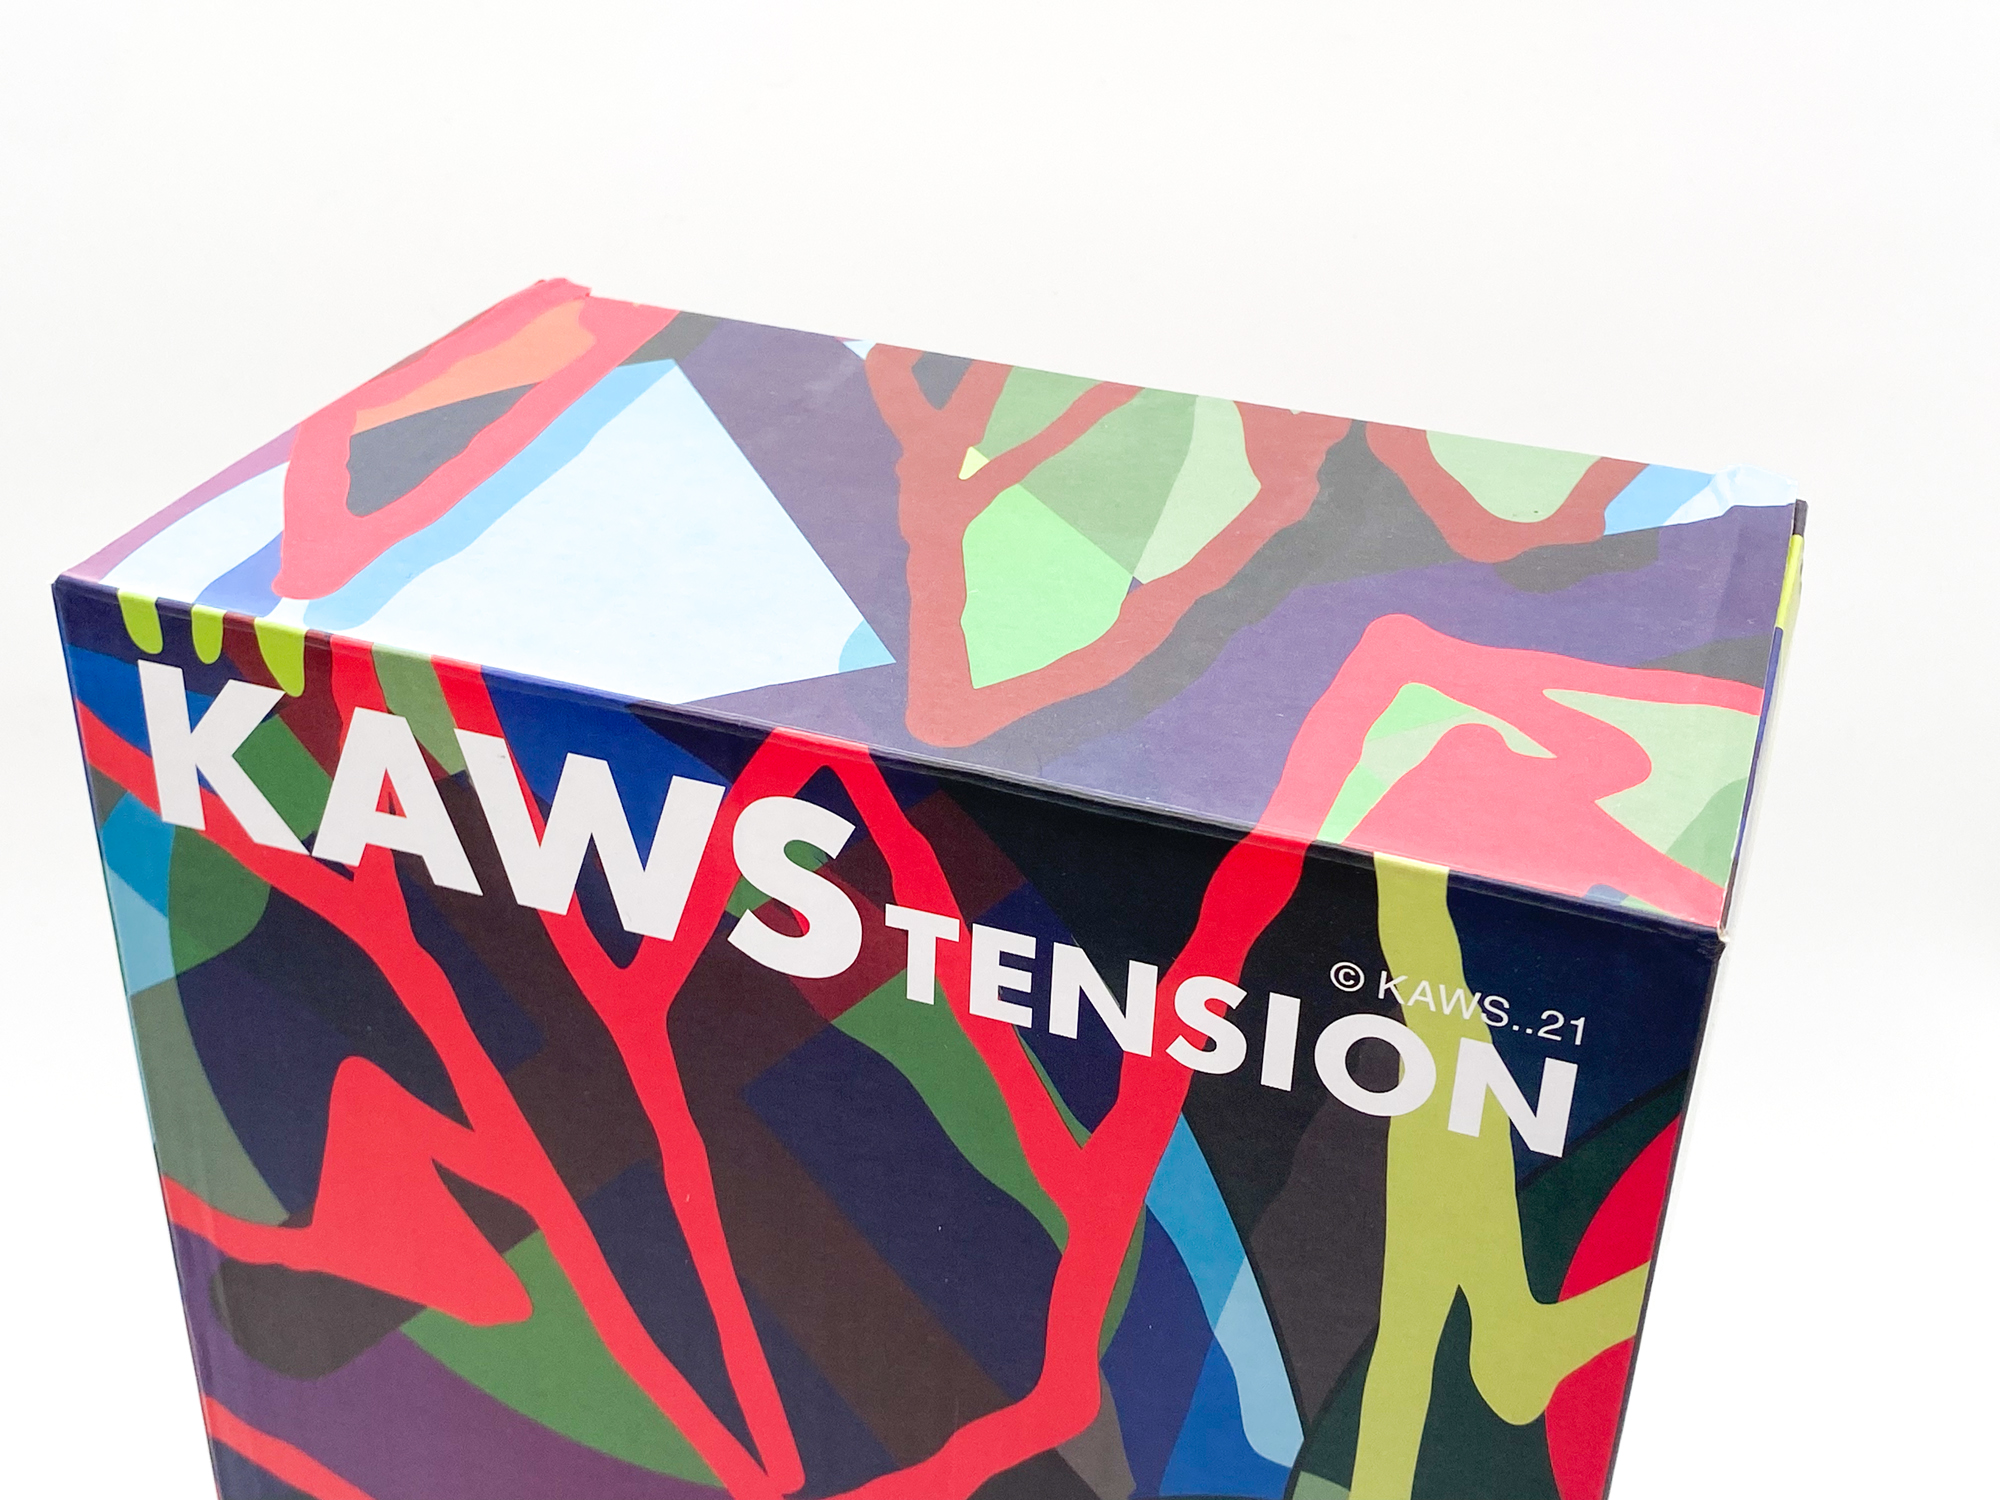 KAWS - KAWS Tension Bearbrick 400% (KAWS Tension Be@rbrick) For